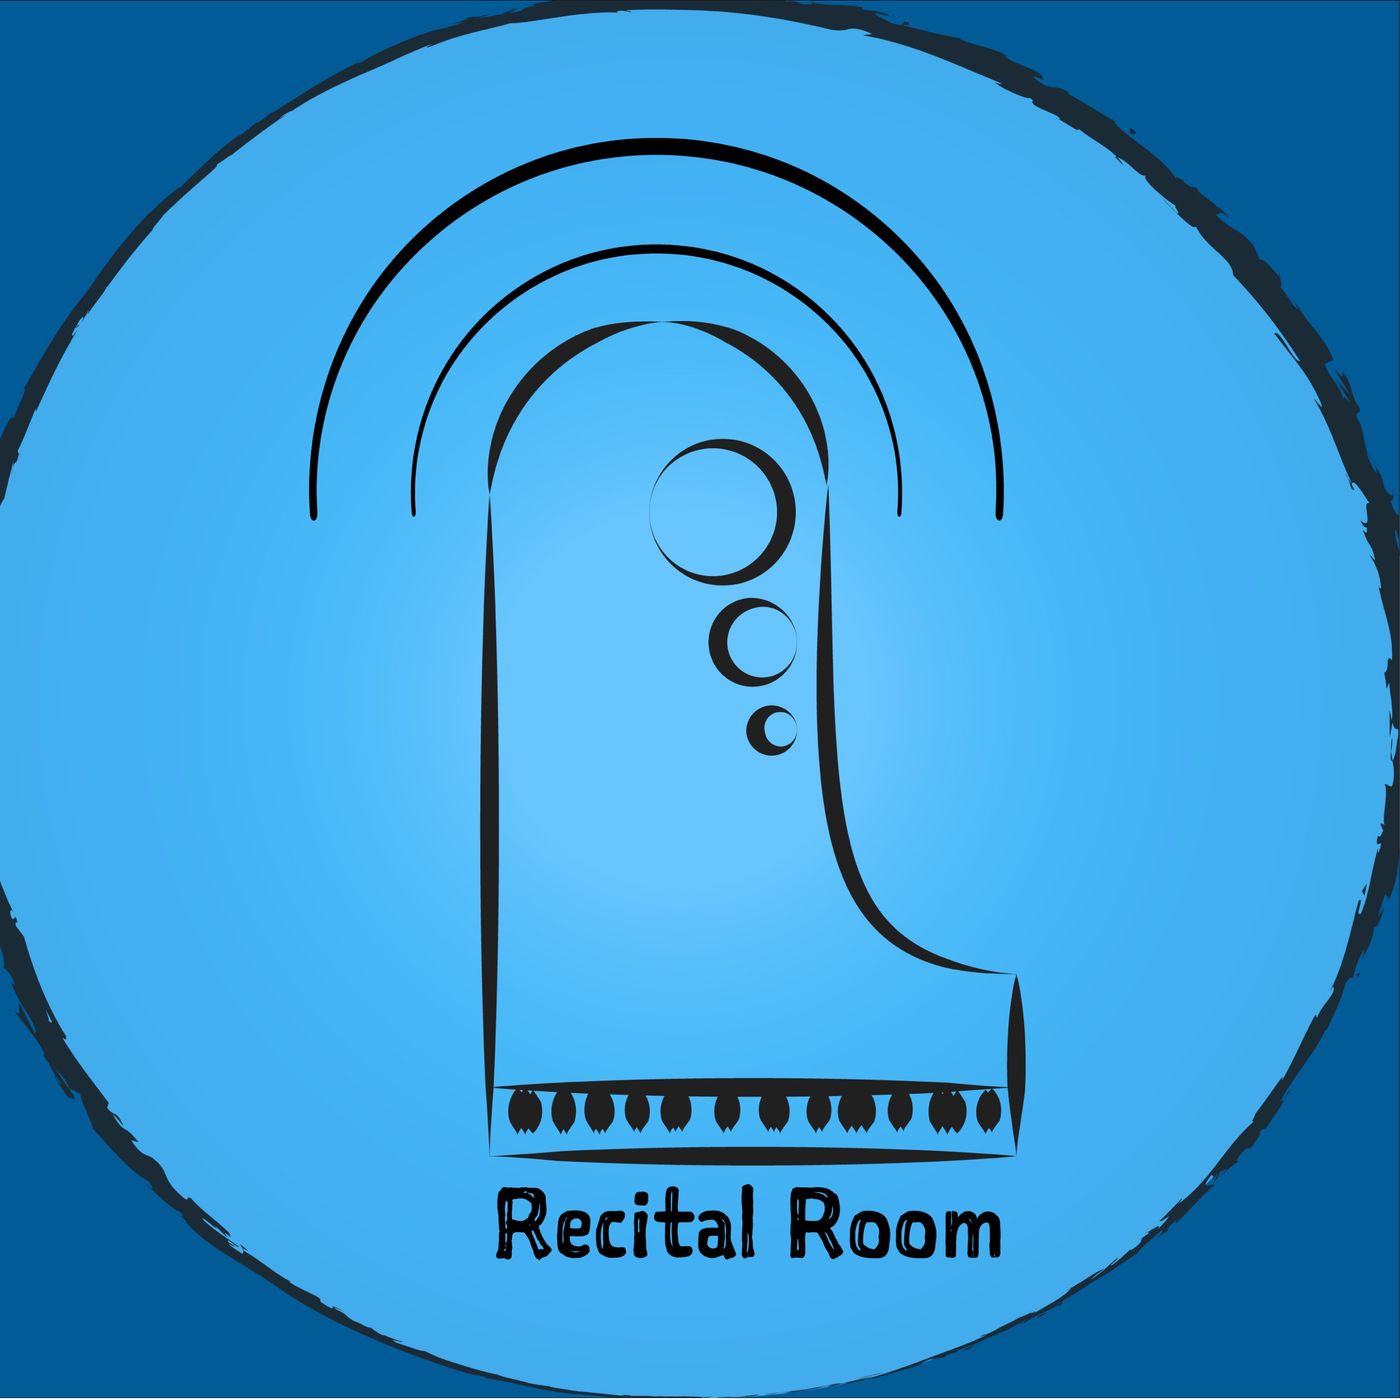 The Recital Room